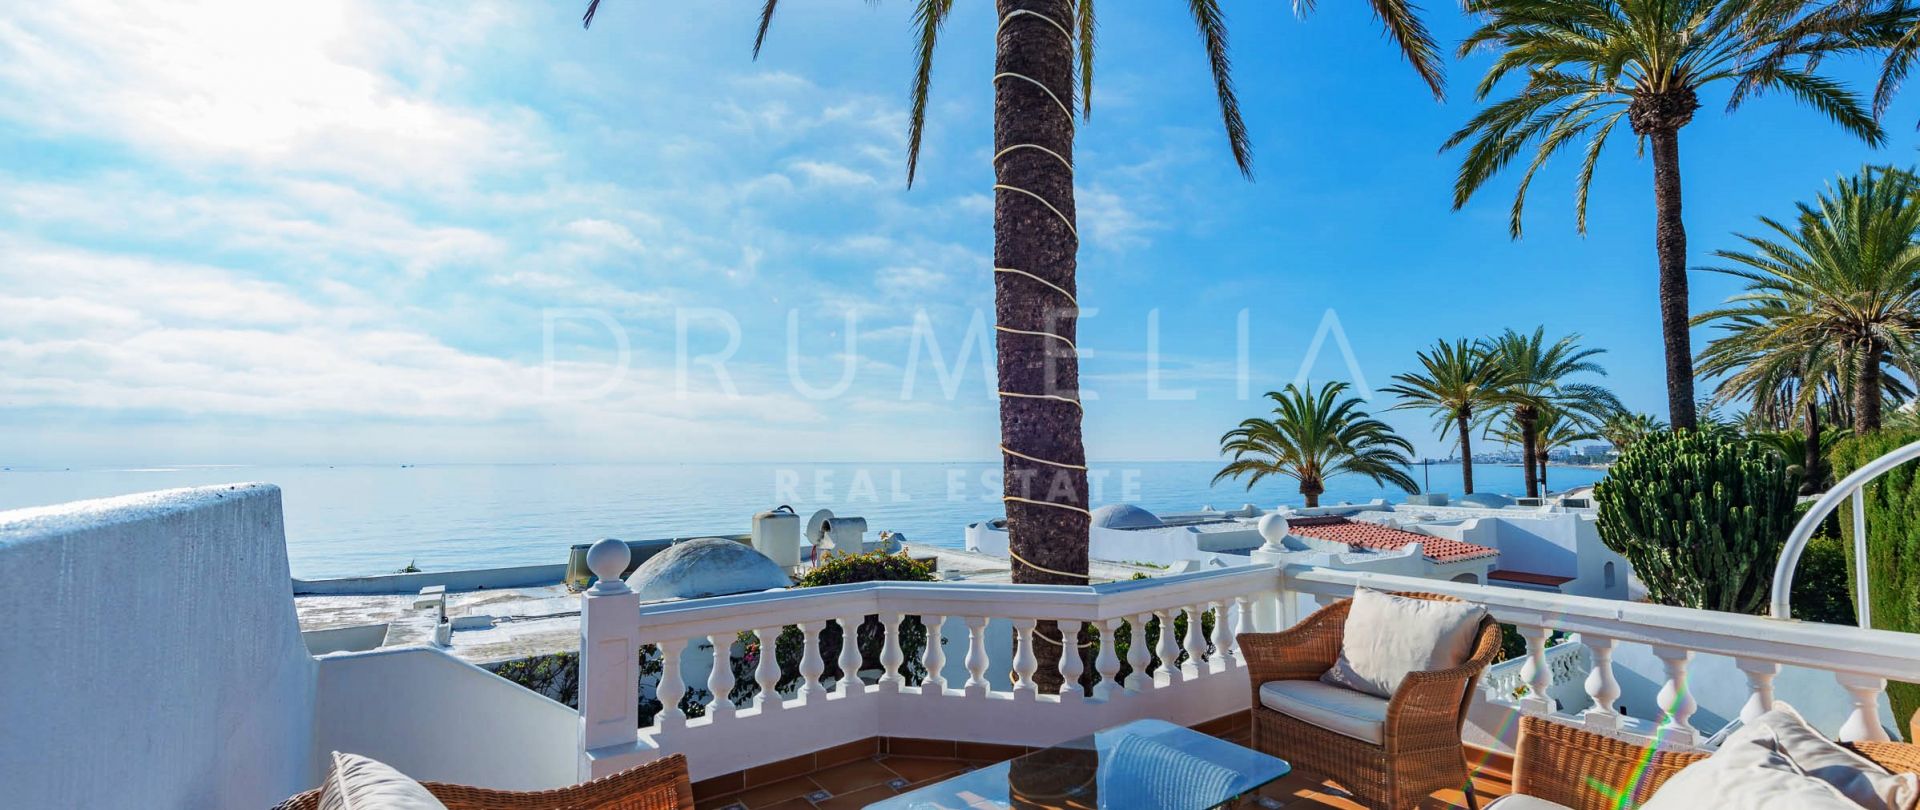 Fantastiskt lyxigt radhus vid stranden, Oasis Club Resort, Golden Mile, Marbella